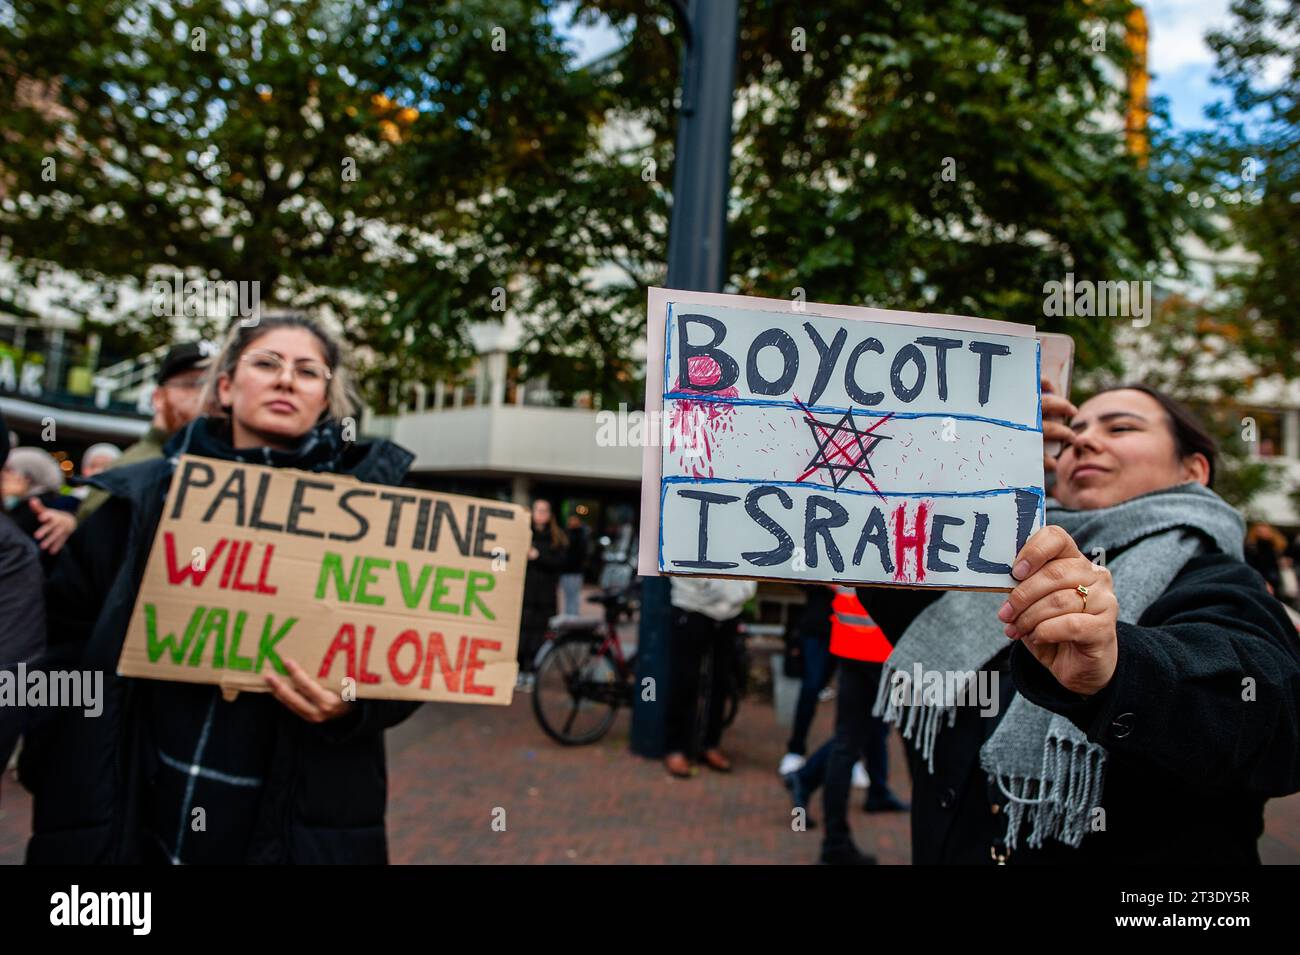 Oktober, Rotterdam. Palästinenser und ihre Unterstützer protestieren immer wieder, um die Regierung Israels zu verurteilen und Solidarität mit dem palästinensischen Volk zum Ausdruck zu bringen. Rund 5.000 Demonstranten versammelten sich in Trauer, Wut und Solidarität wegen der jüngsten Eskalation des israelisch-palästinensischen Konflikts und der beunruhigenden Ereignisse in Gaza. Stockfoto